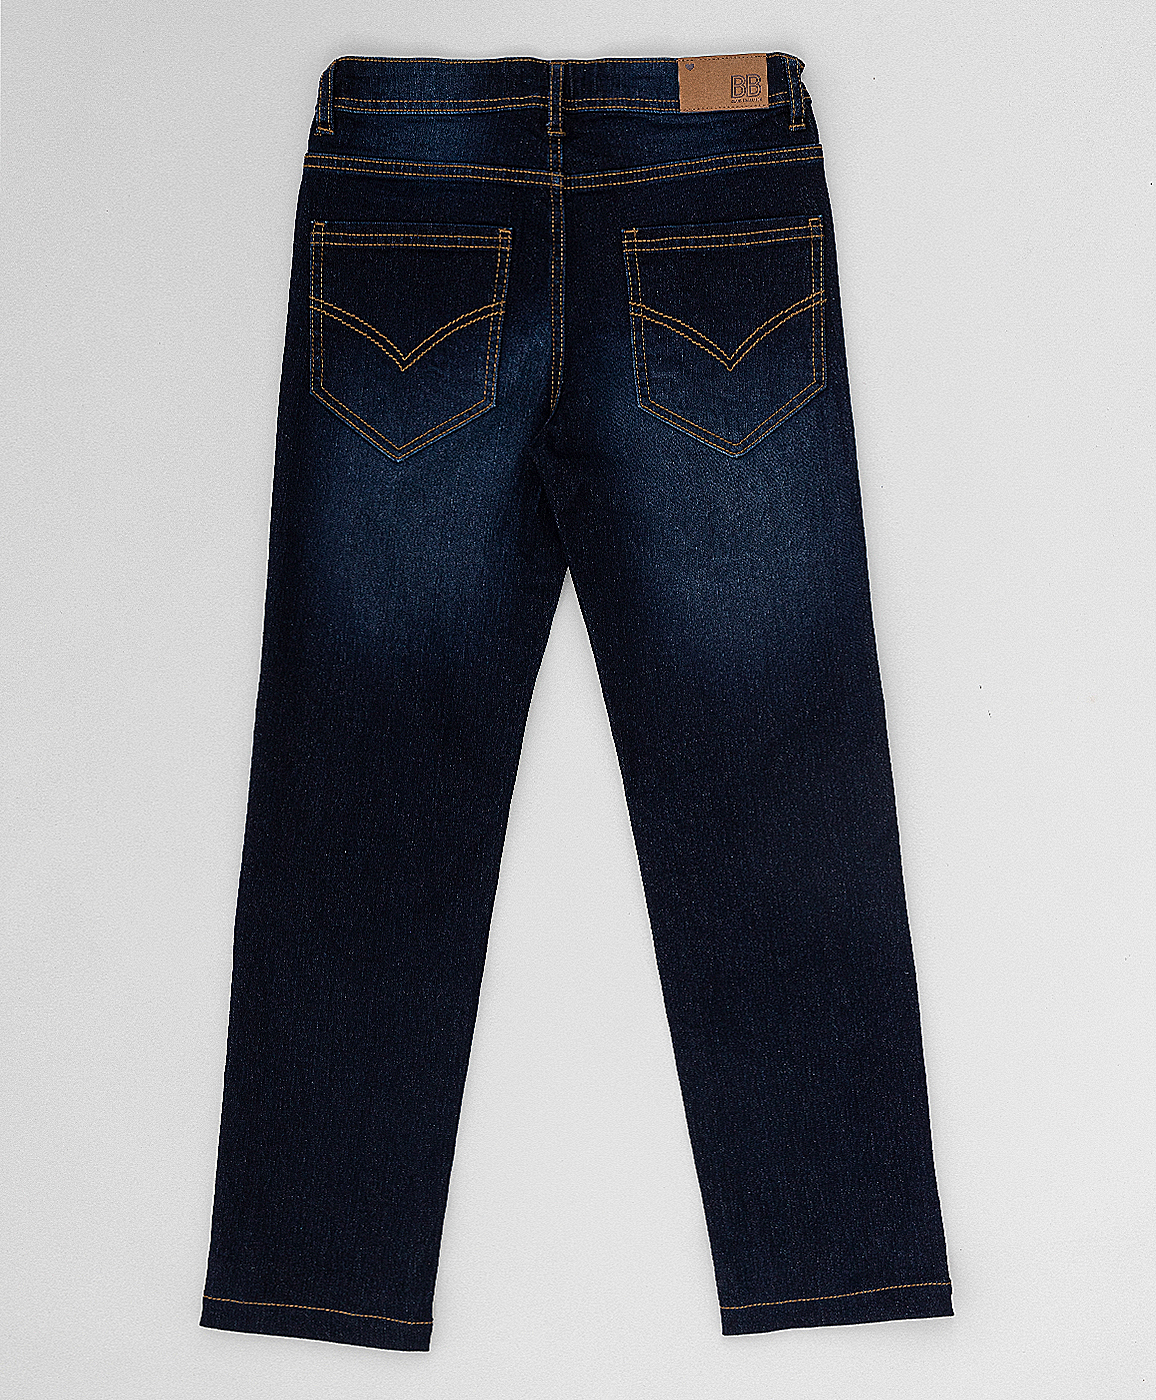 Темно-синие джинсы Button Blue 220BBGMC6302D500, размер 116, цвет синий regular fit / прямые - фото 4